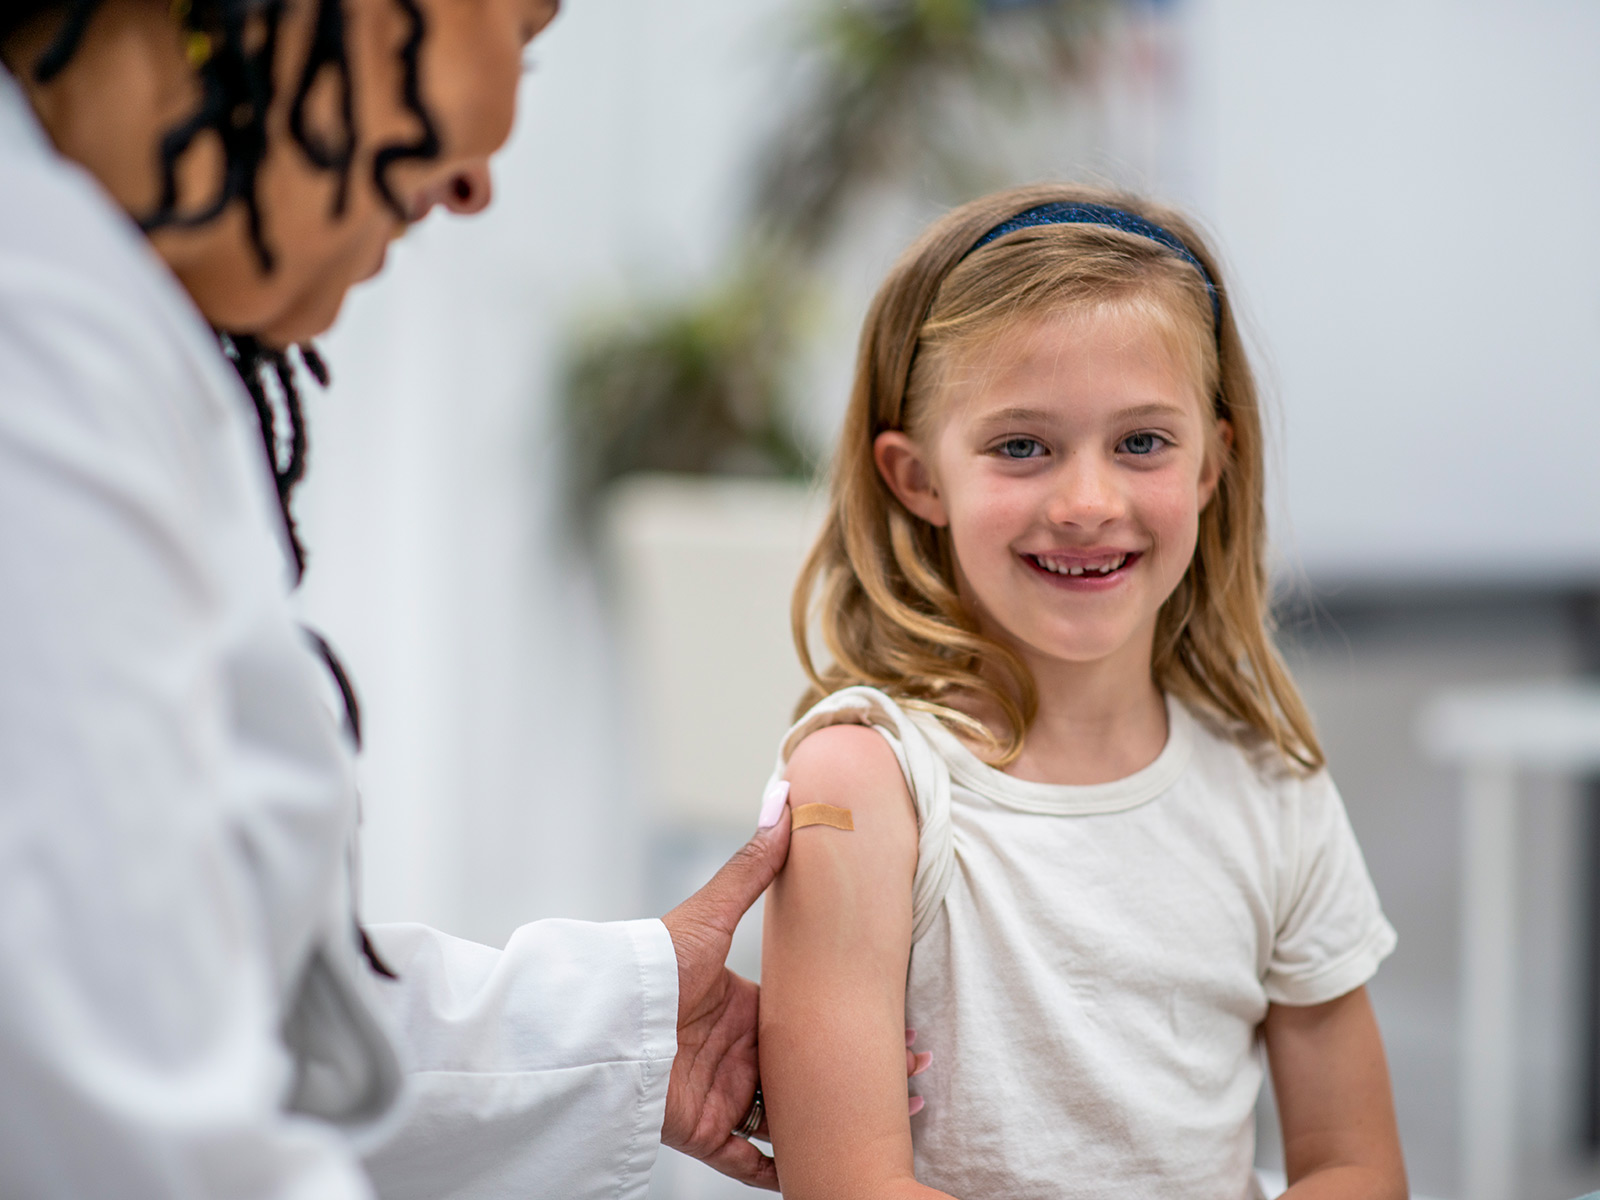 Un proveedor de servicios de salud coloca un apósito a una niña luego de aplicarle la vacuna contra la gripe.